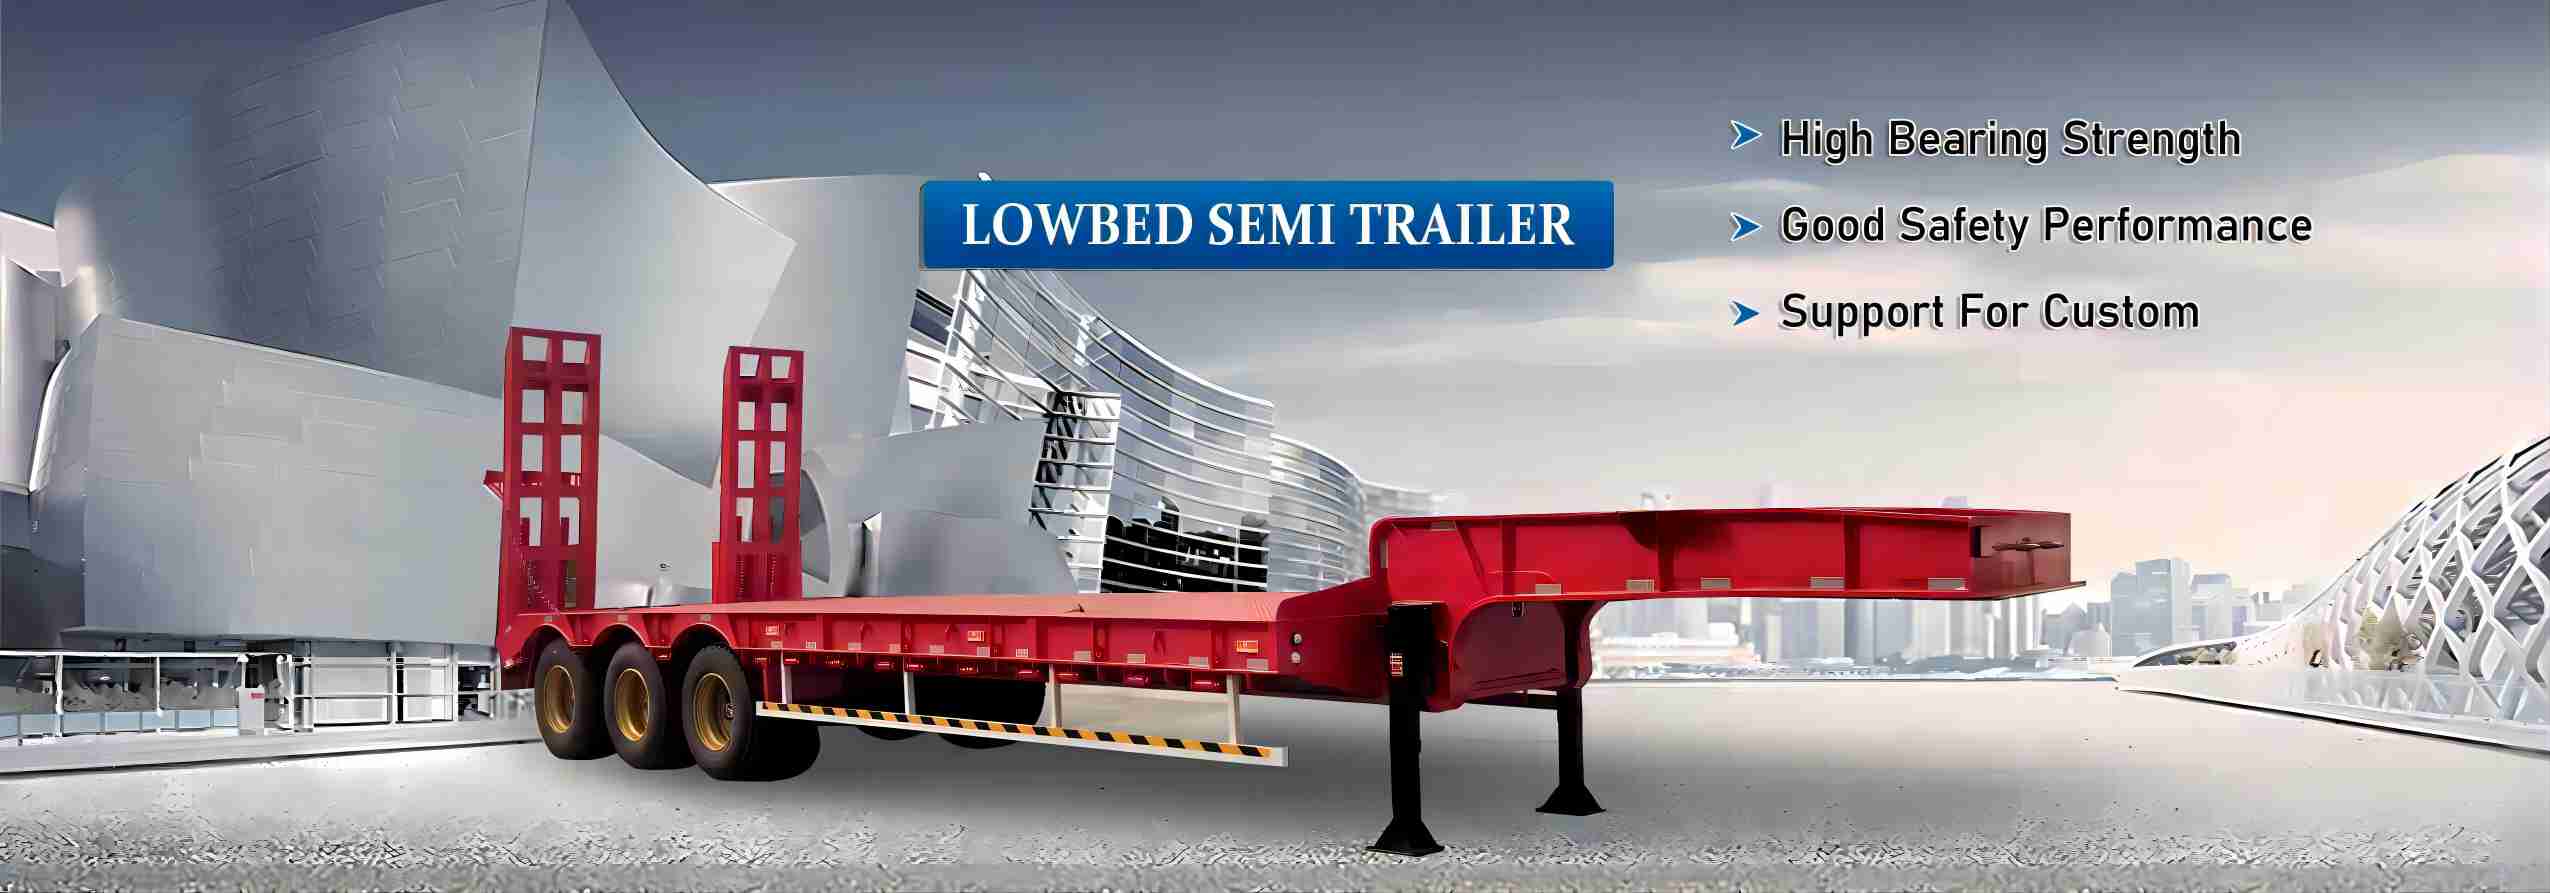 lowbed-trailer-banner